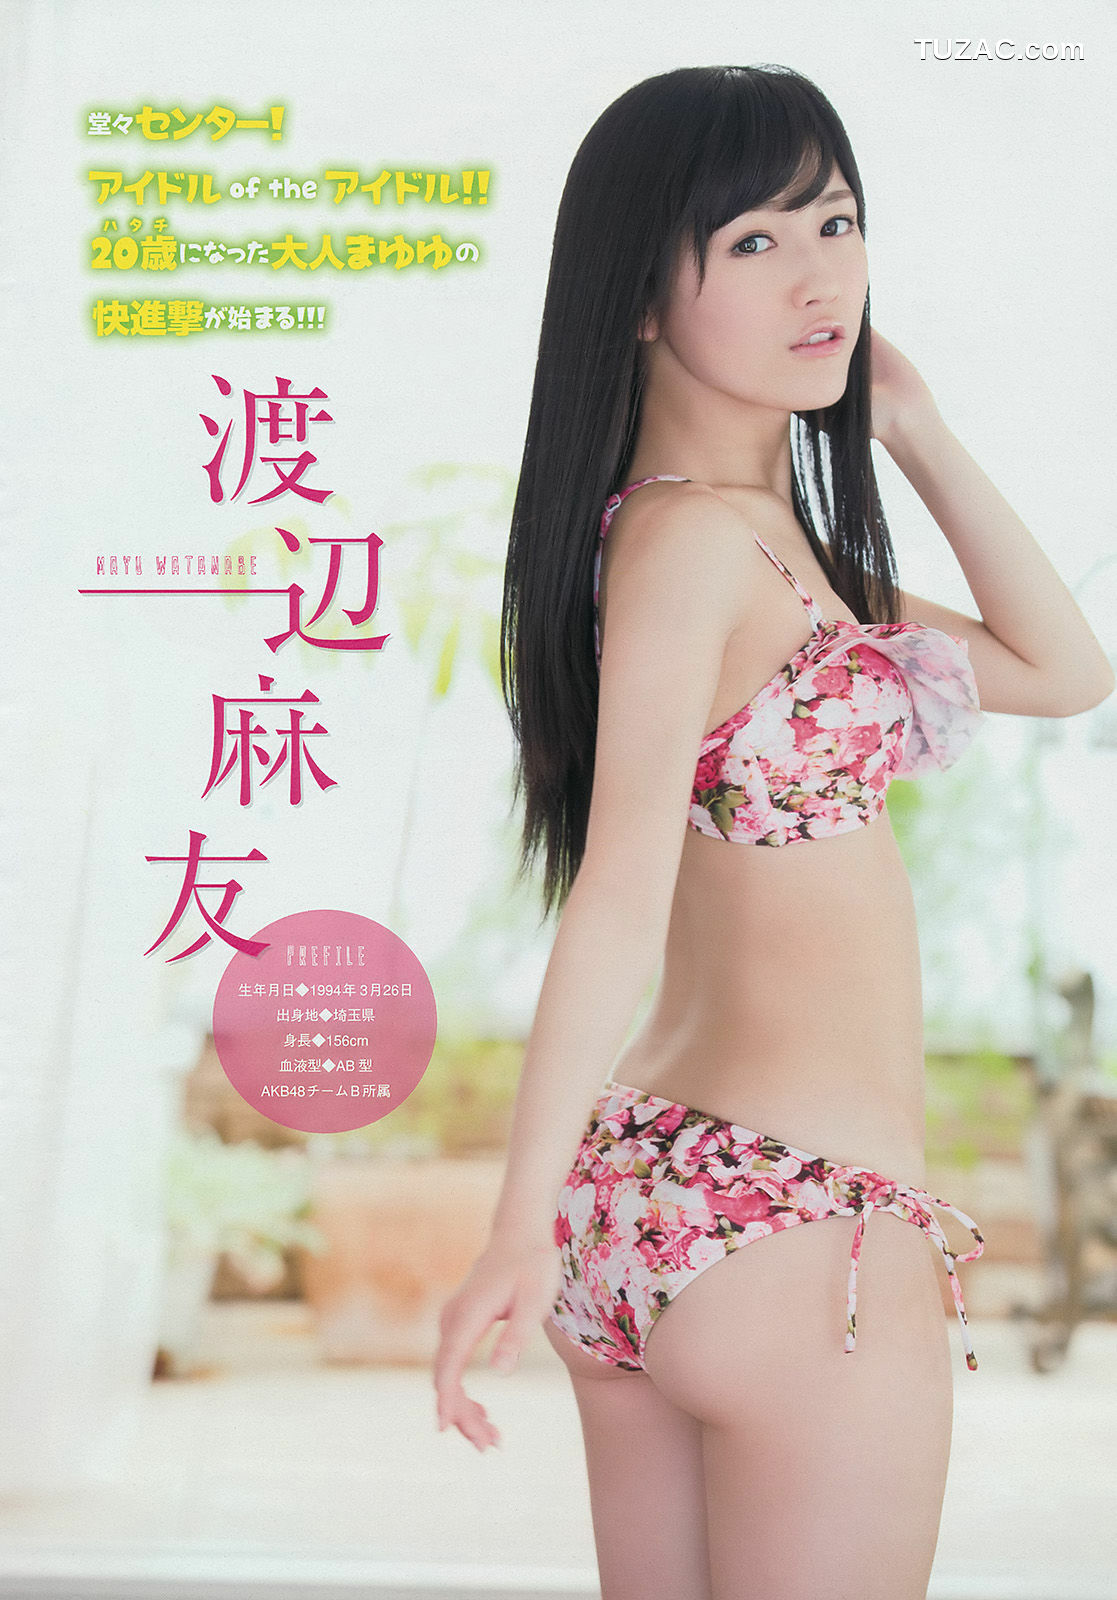 Young Magazine杂志写真_ 渡辺麻友 川栄李奈 2401年No.27 写真杂志[17P]